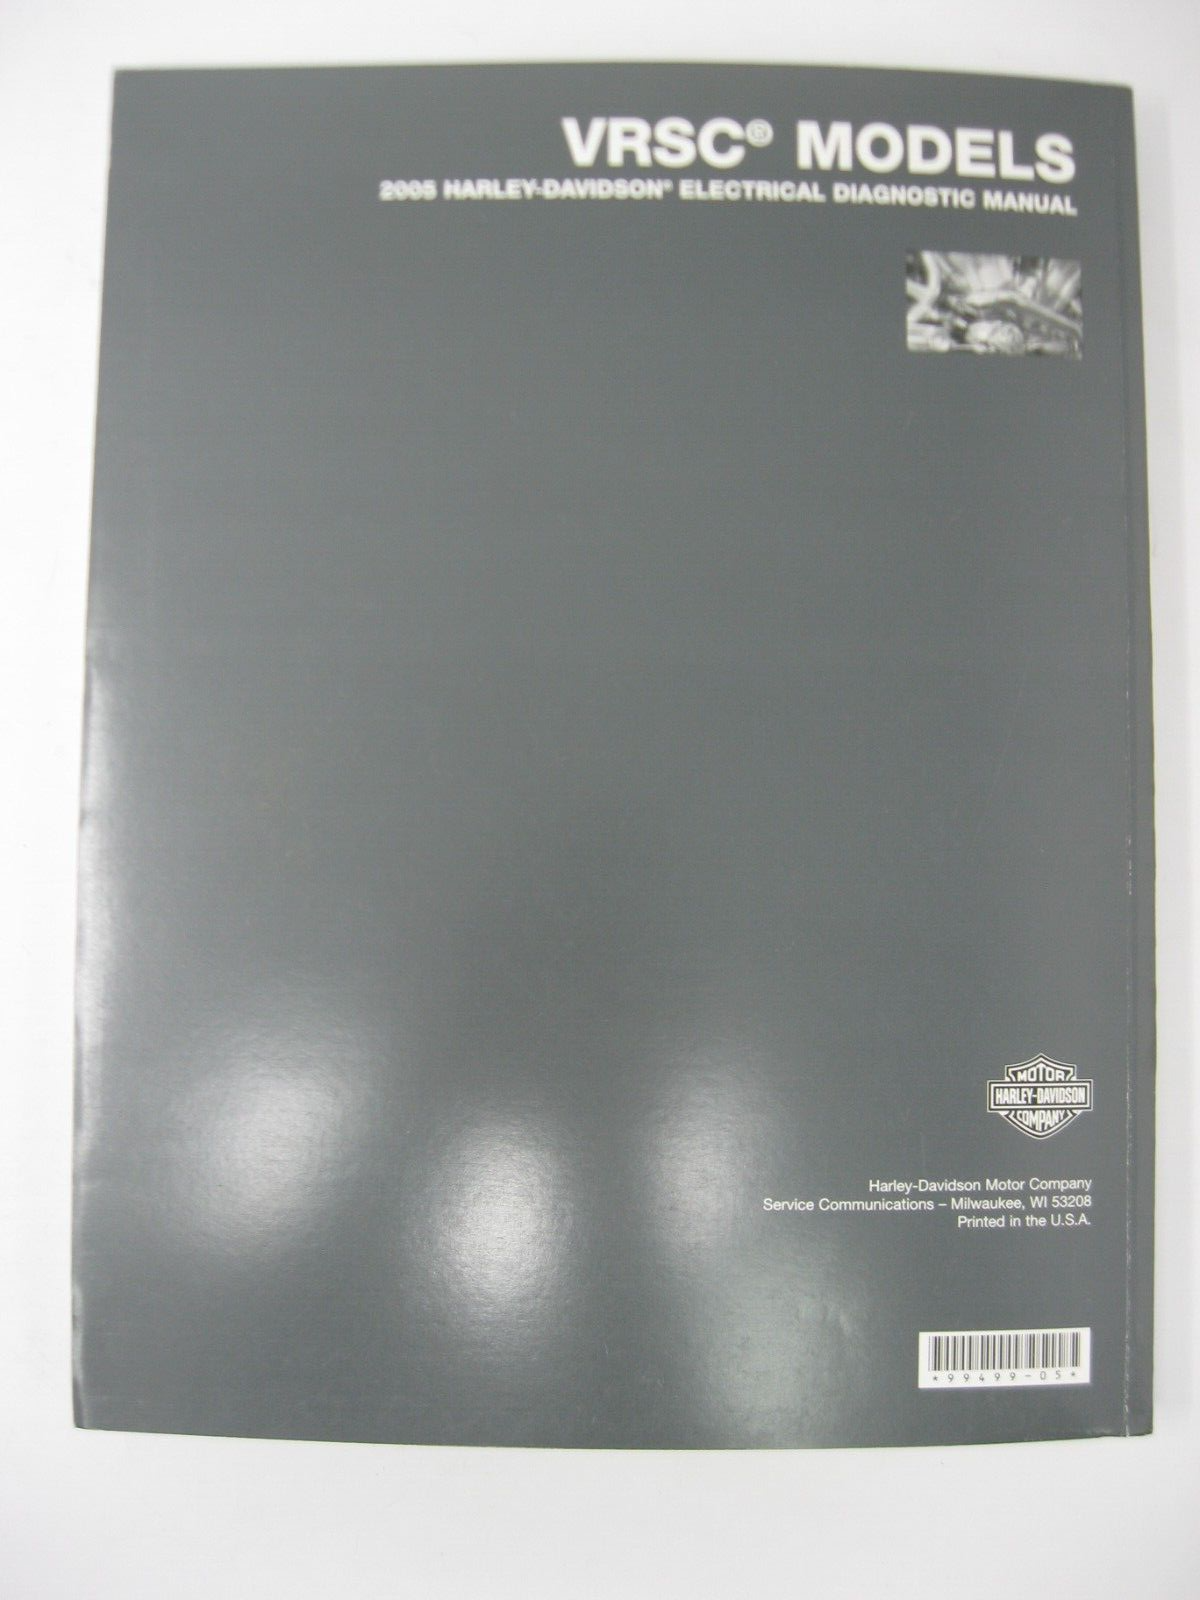 Harley-Davidson VRSC Models 2005 Electrical Diagnostic Manual 99499-05